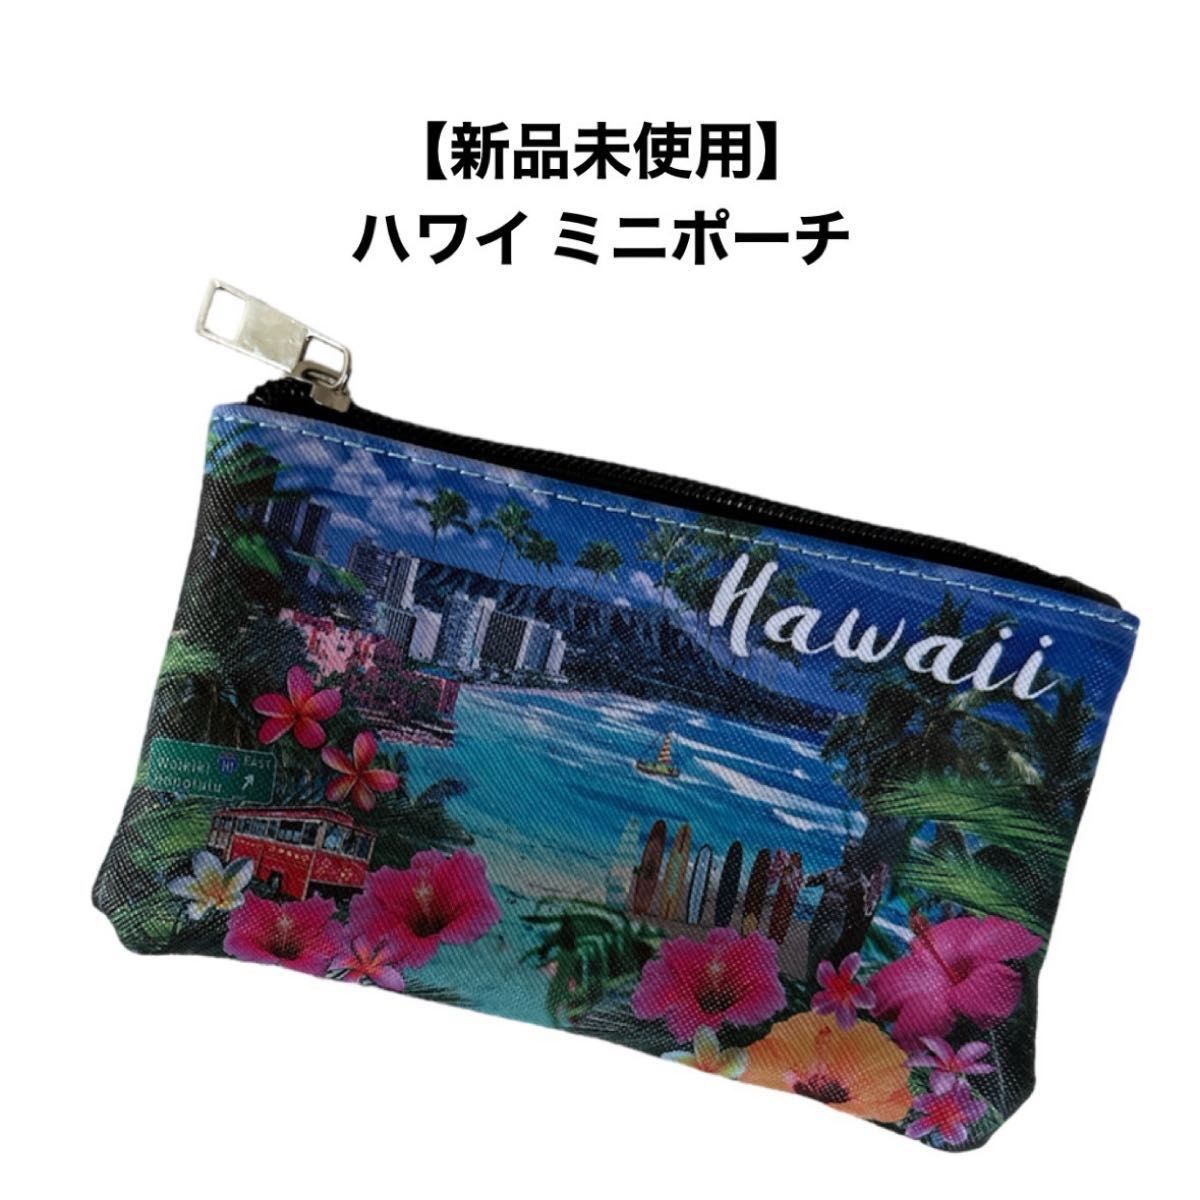 【新品未使用】ハワイ ミニポーチ お土産 ハワイアン